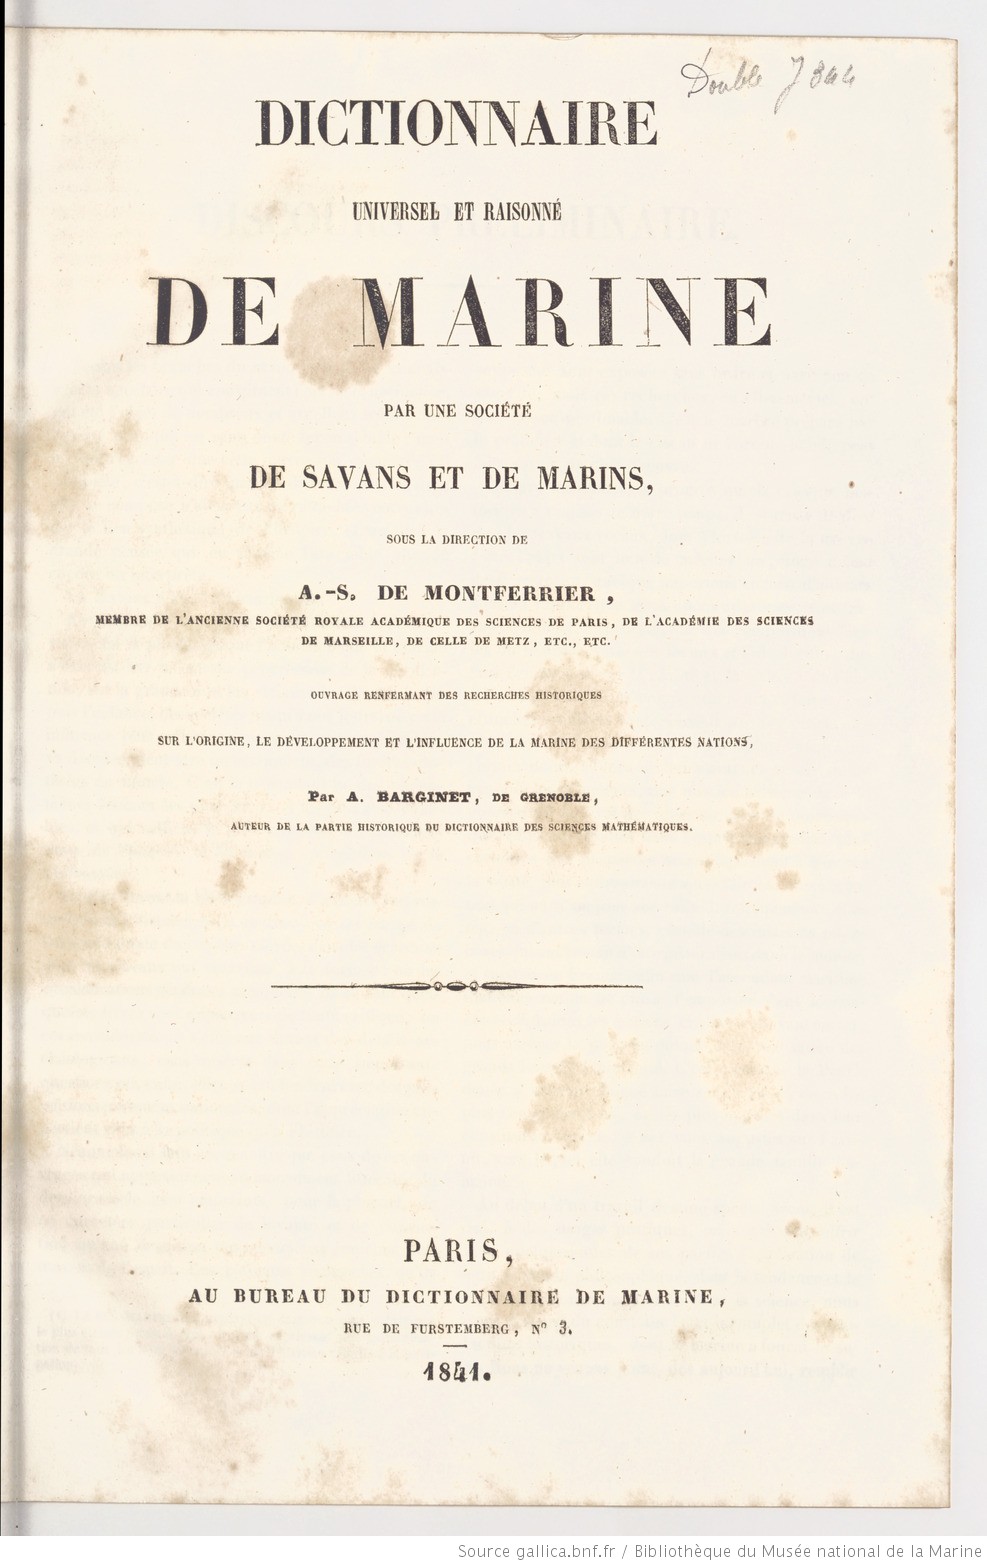 Dictionnaire universel et raisonné de Marine